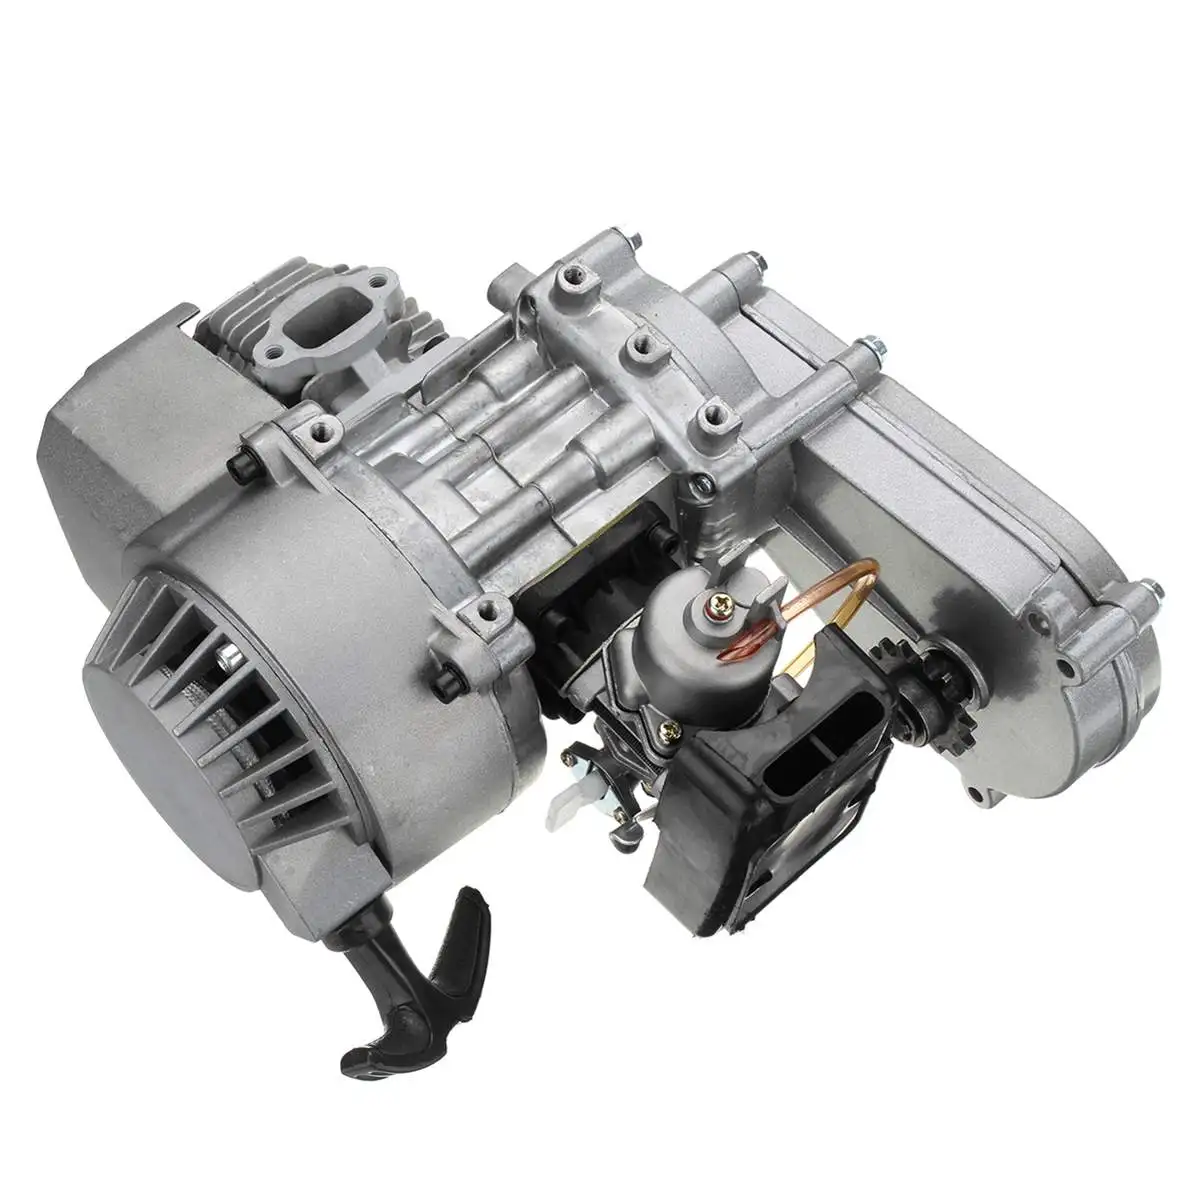 49cc 47cc мотоциклетные полный двигатель 2-х тактный двигатель старт тяги W/коробка передач Серебряный для мини-байк